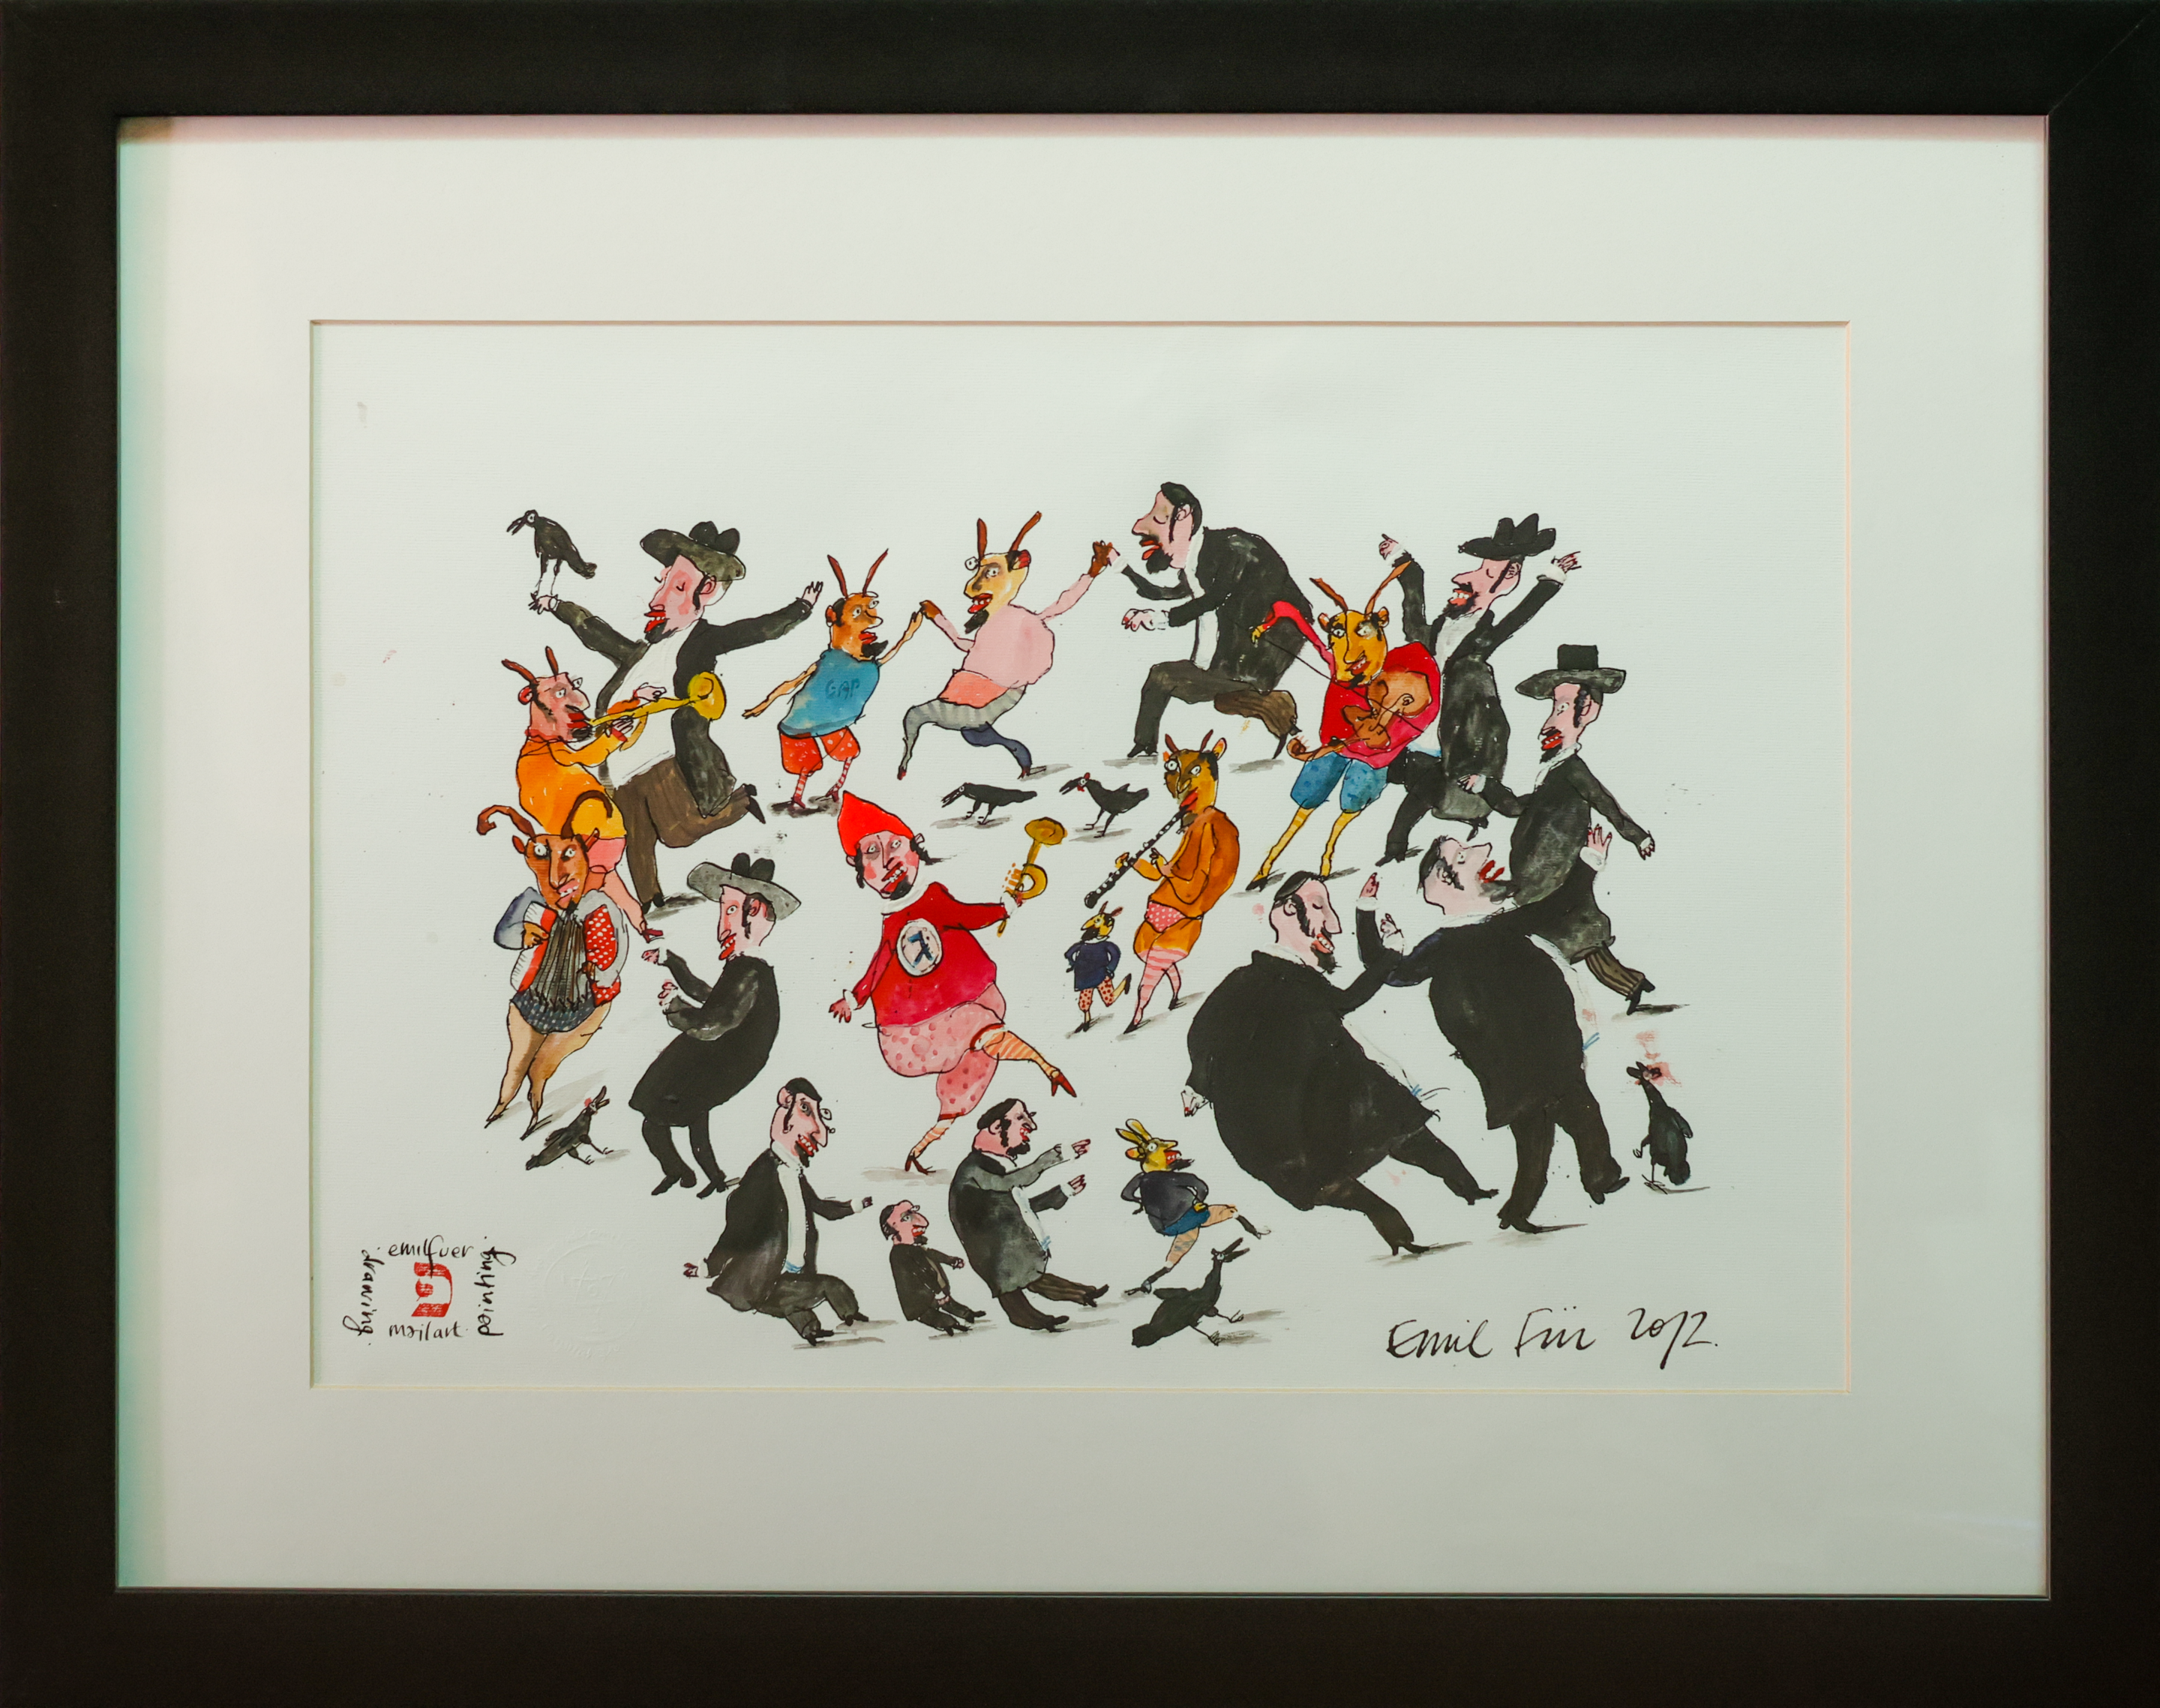 Golem's Clown Dance by Emil Für.